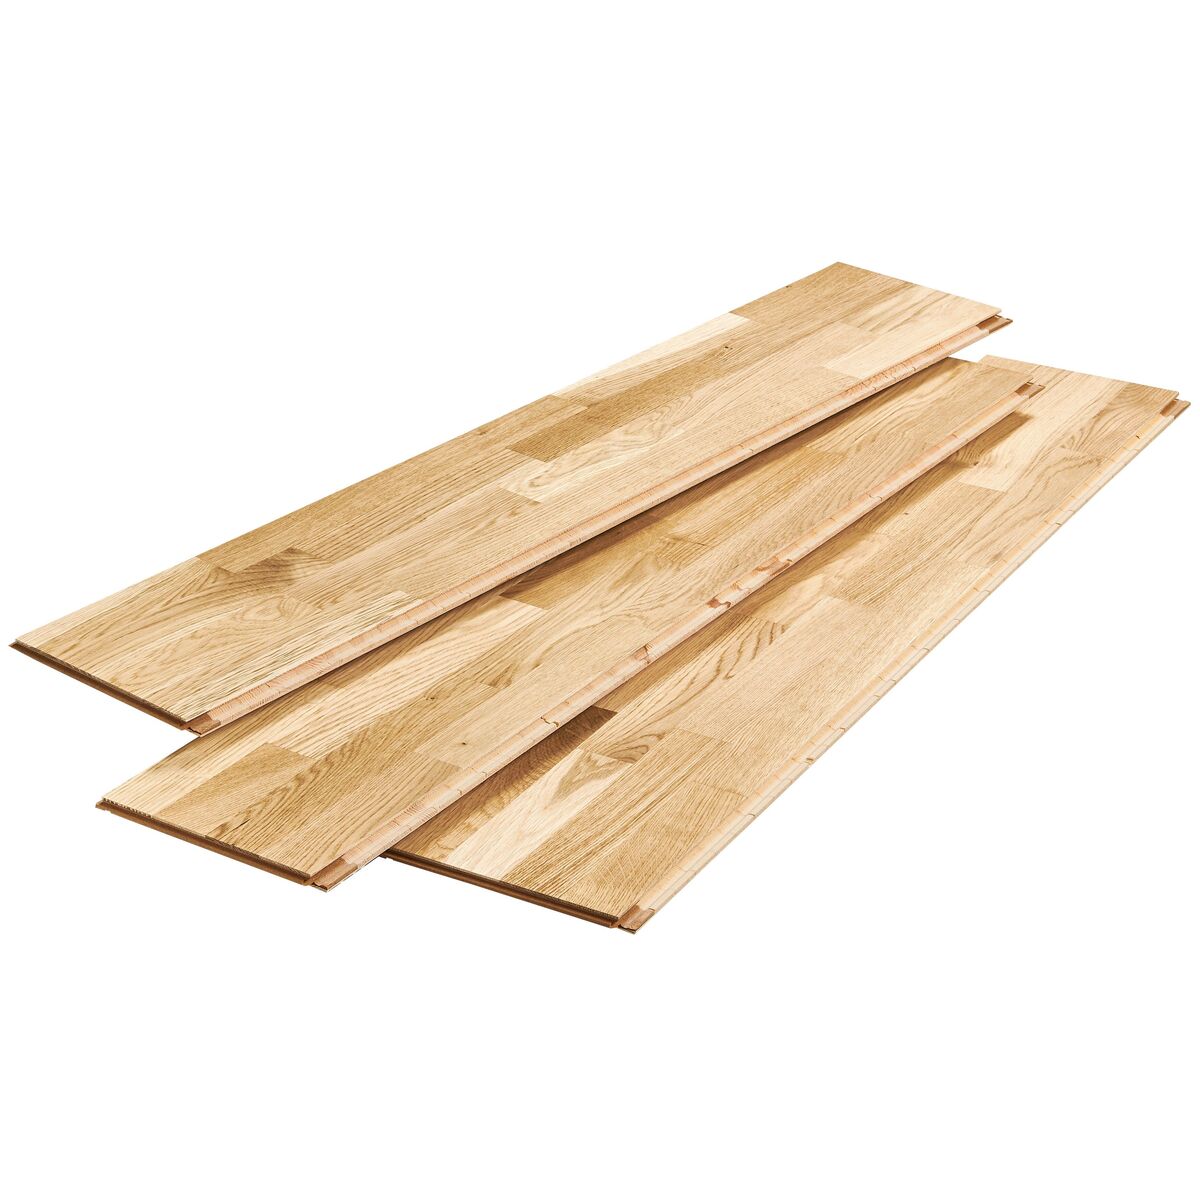 Podłoga drewniana deska trójwarstwowa Dąb rustic 4-lamelowa lakier półmatowy 14 mm Barlinek